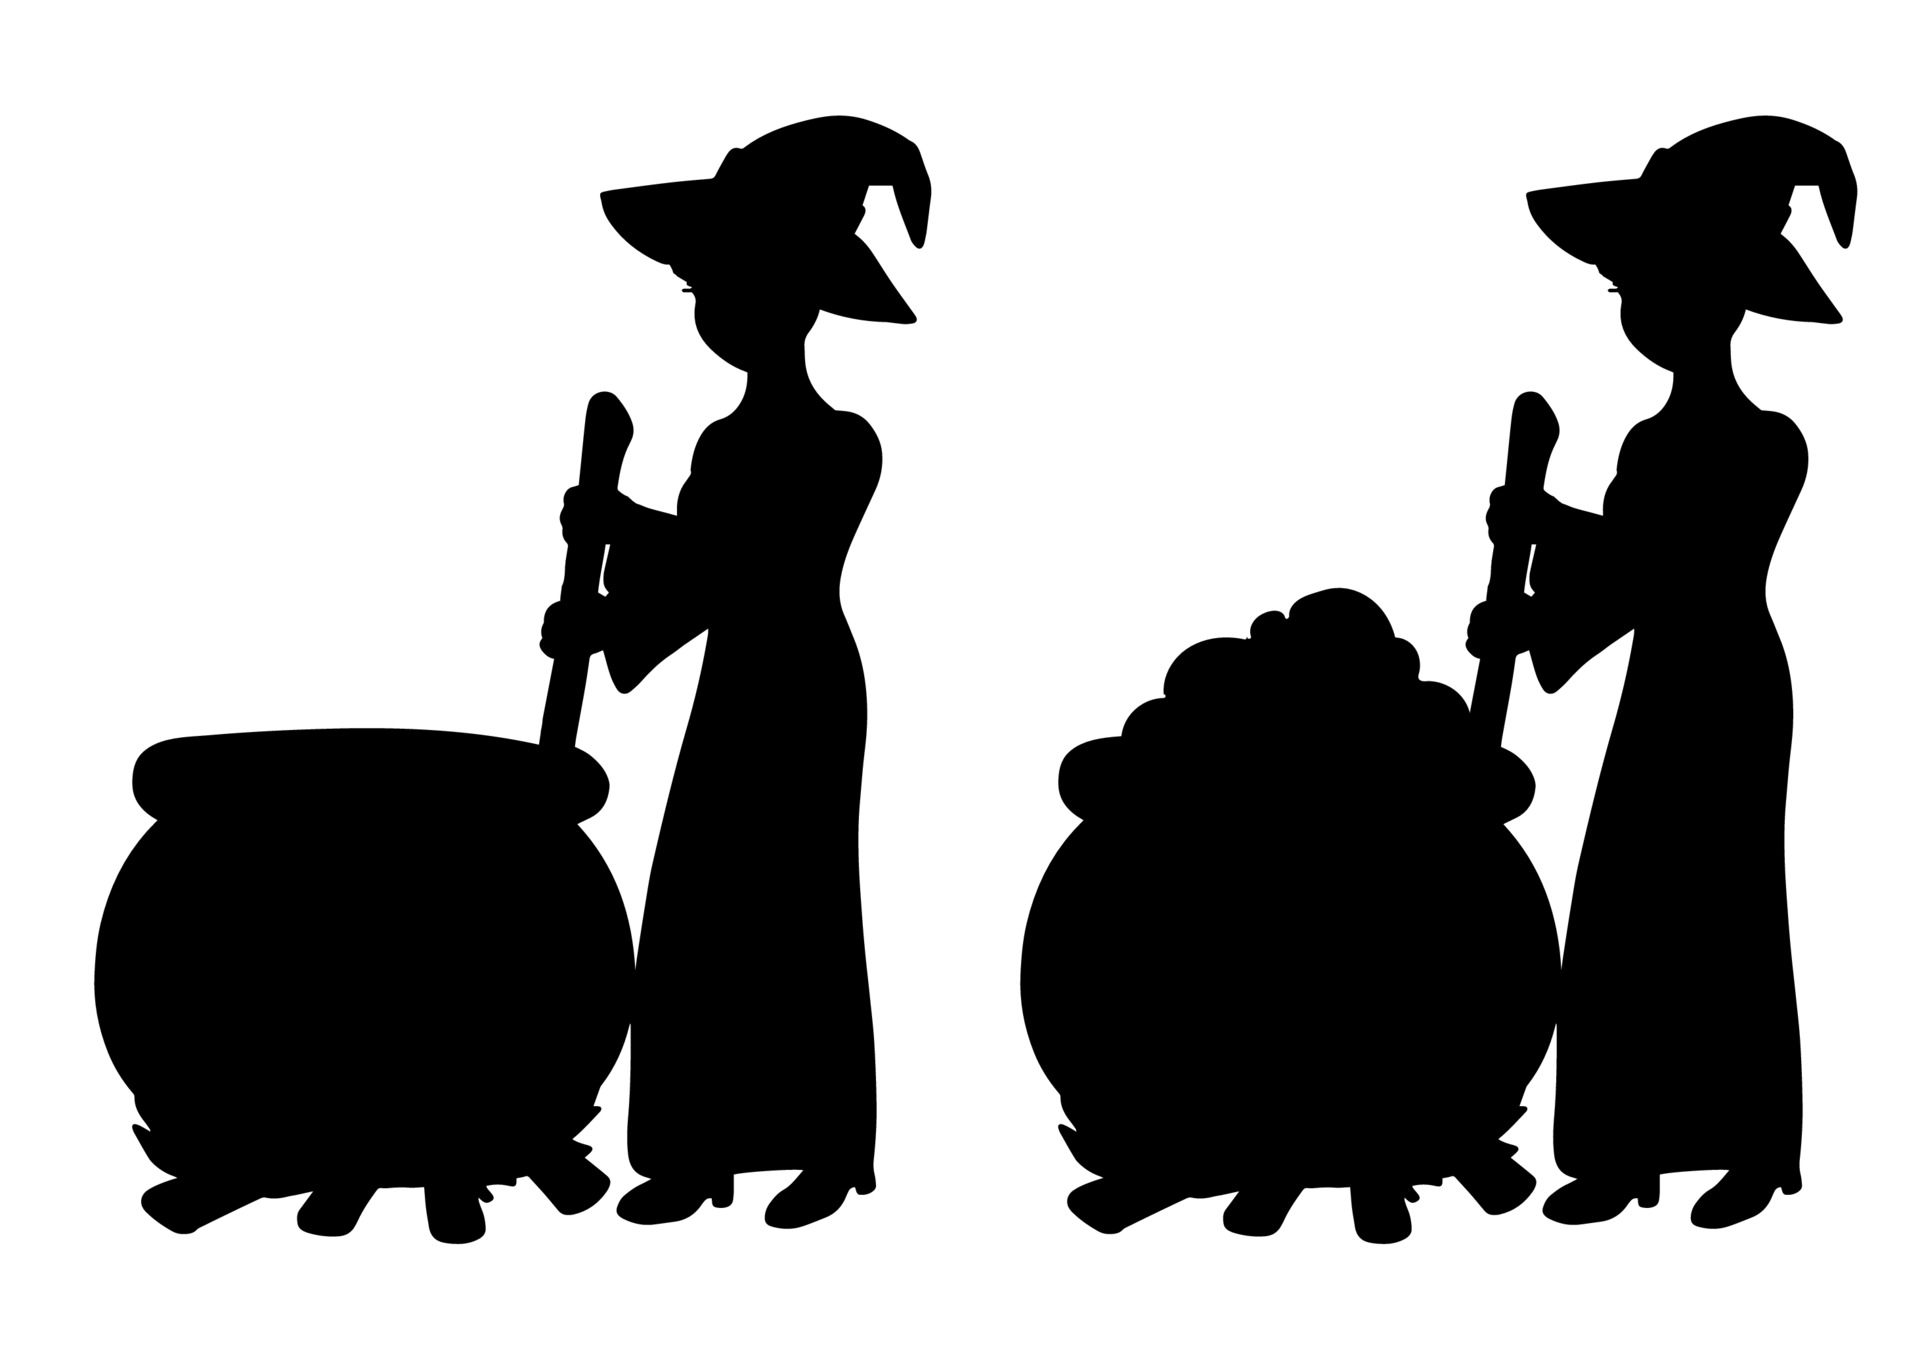 Bruxa feia vestida de preto com o chapéu preto está preparando uma poção em  um caldeirão., Banco de Video - Envato Elements